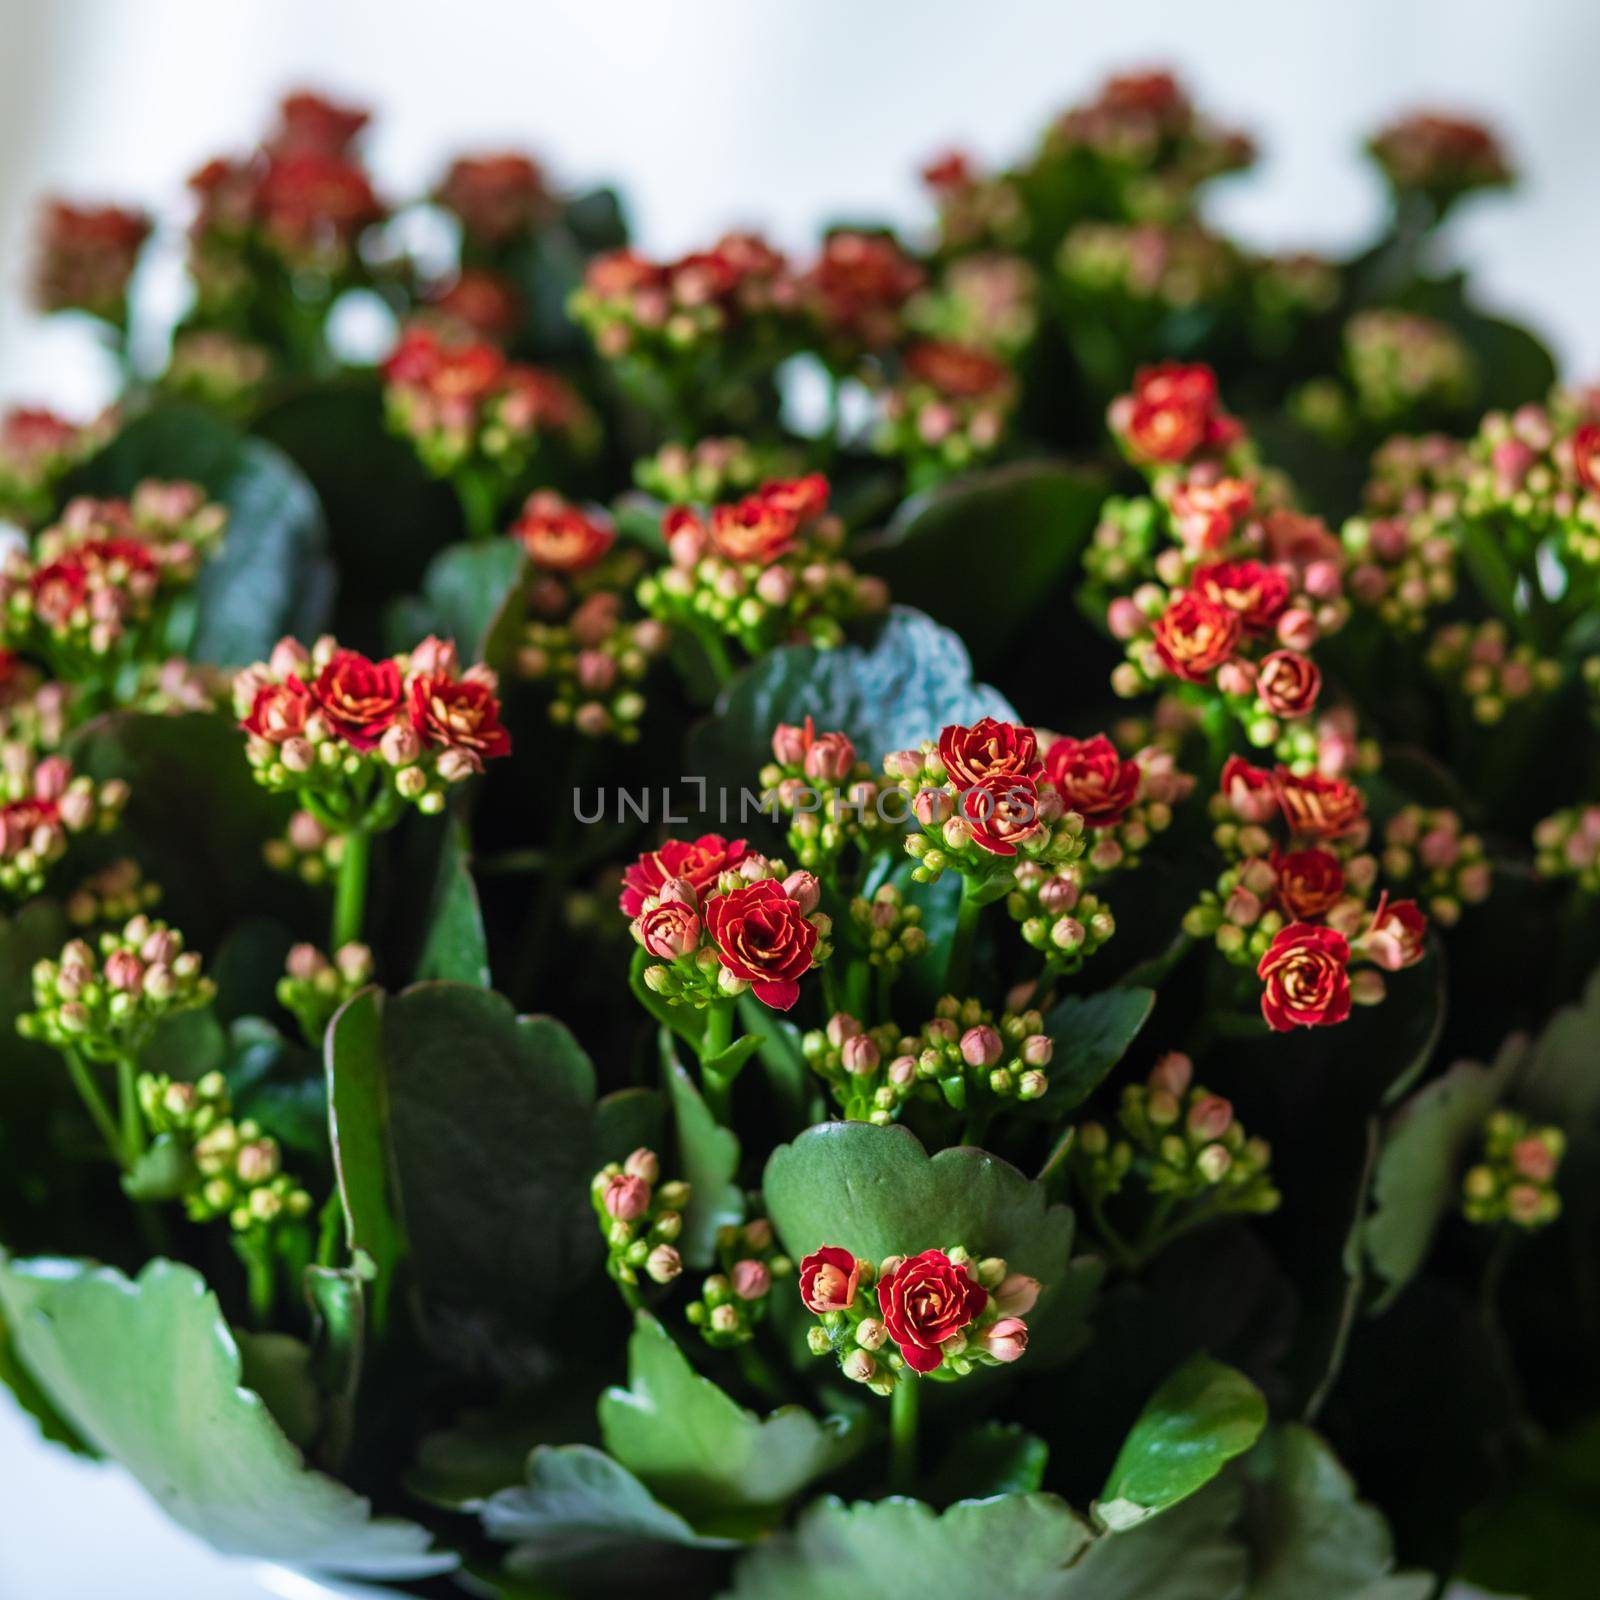 Colorful Lantana camara flower plant close up